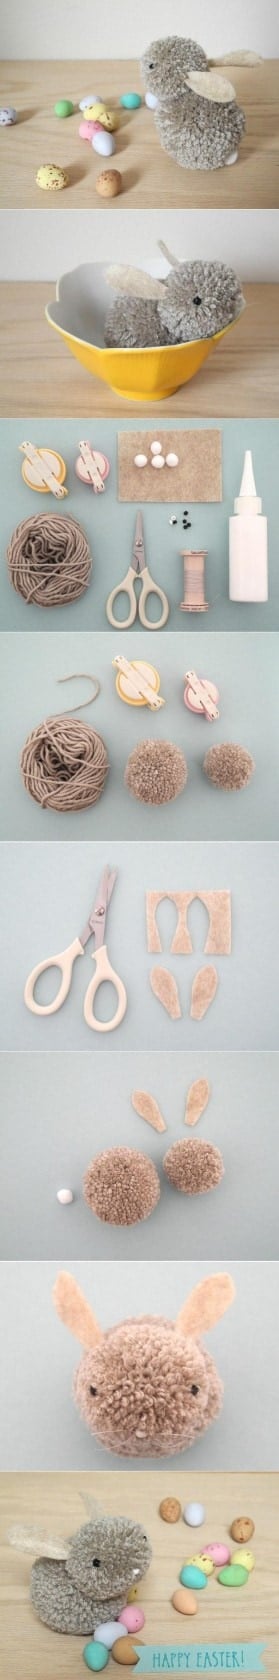 How to make a Pom Pom Bunny for a fun Easter craft!